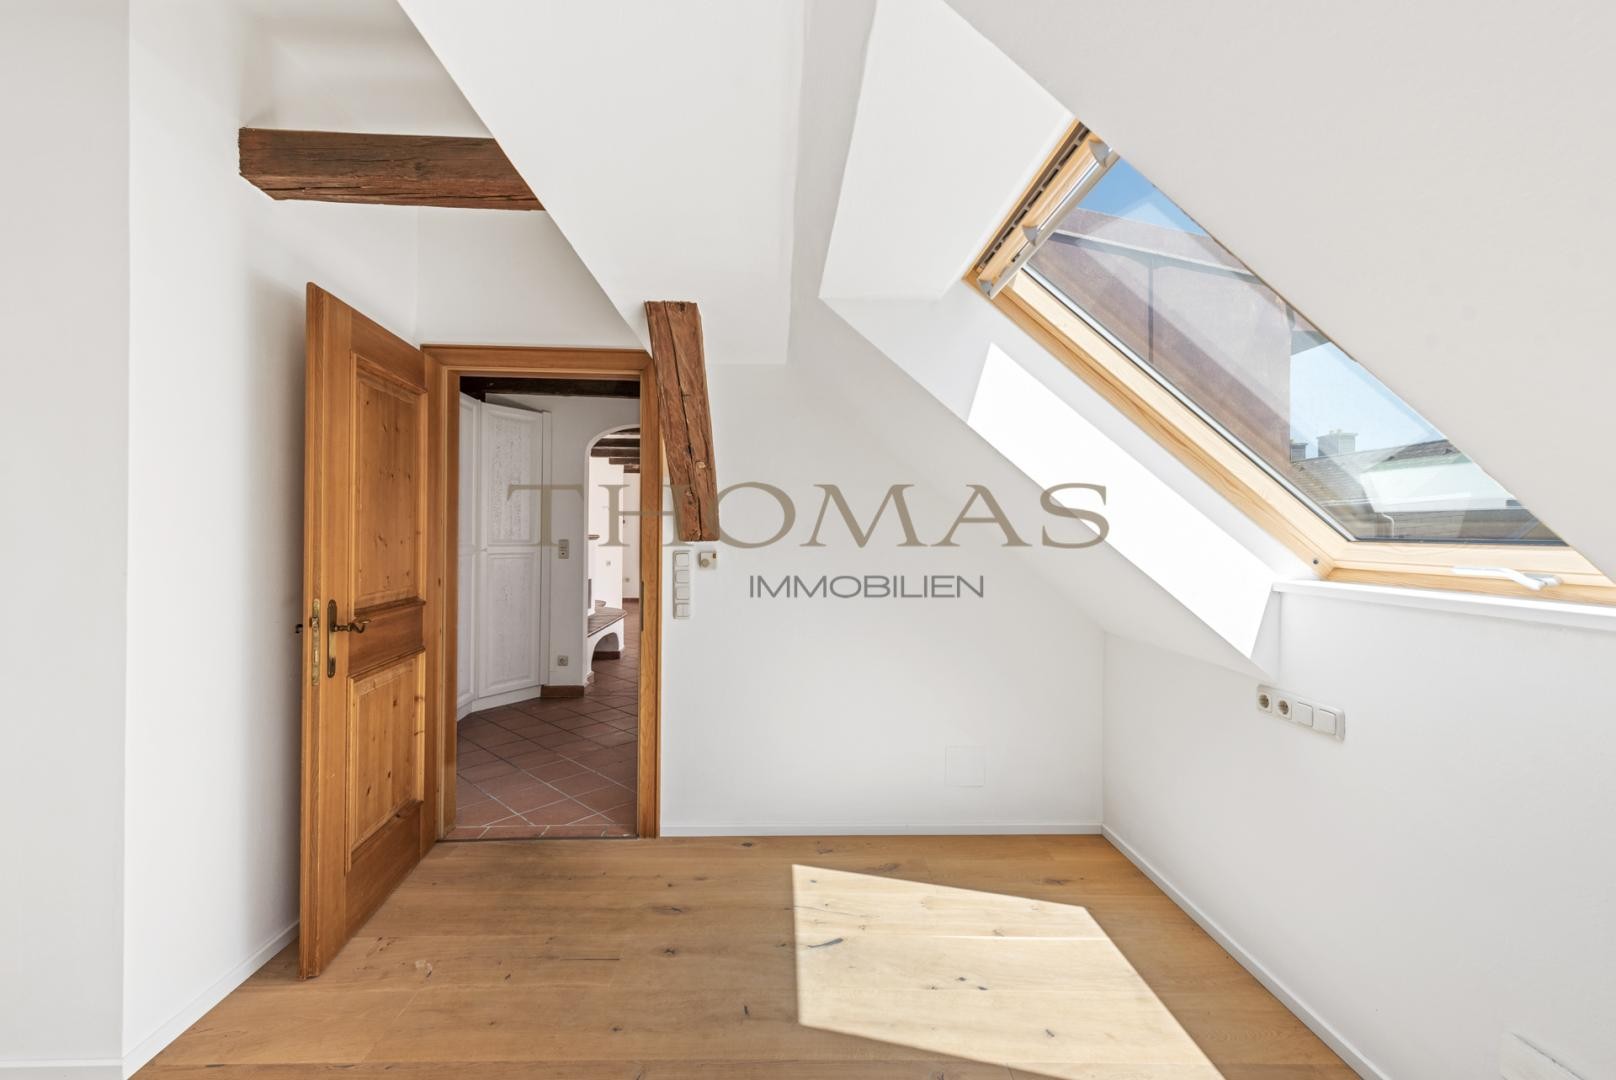 Thomas Immobilien-  Charmante 3-Zimmer Dachgeschosswohnung